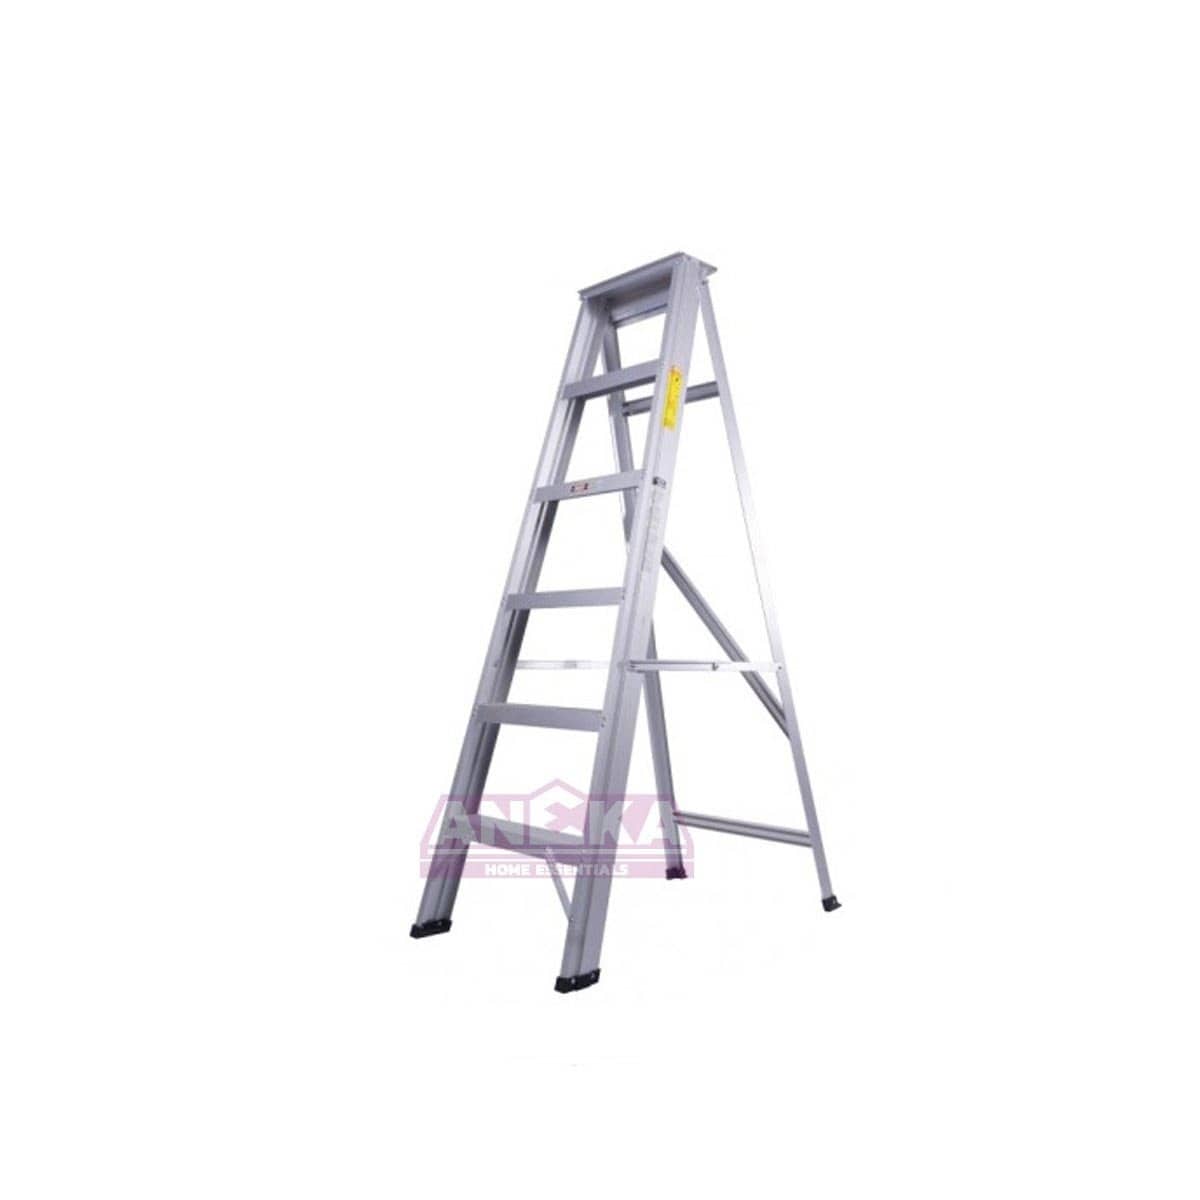 SUMO KING Heavy Duty Single Sided Ladder (6 STEPS)